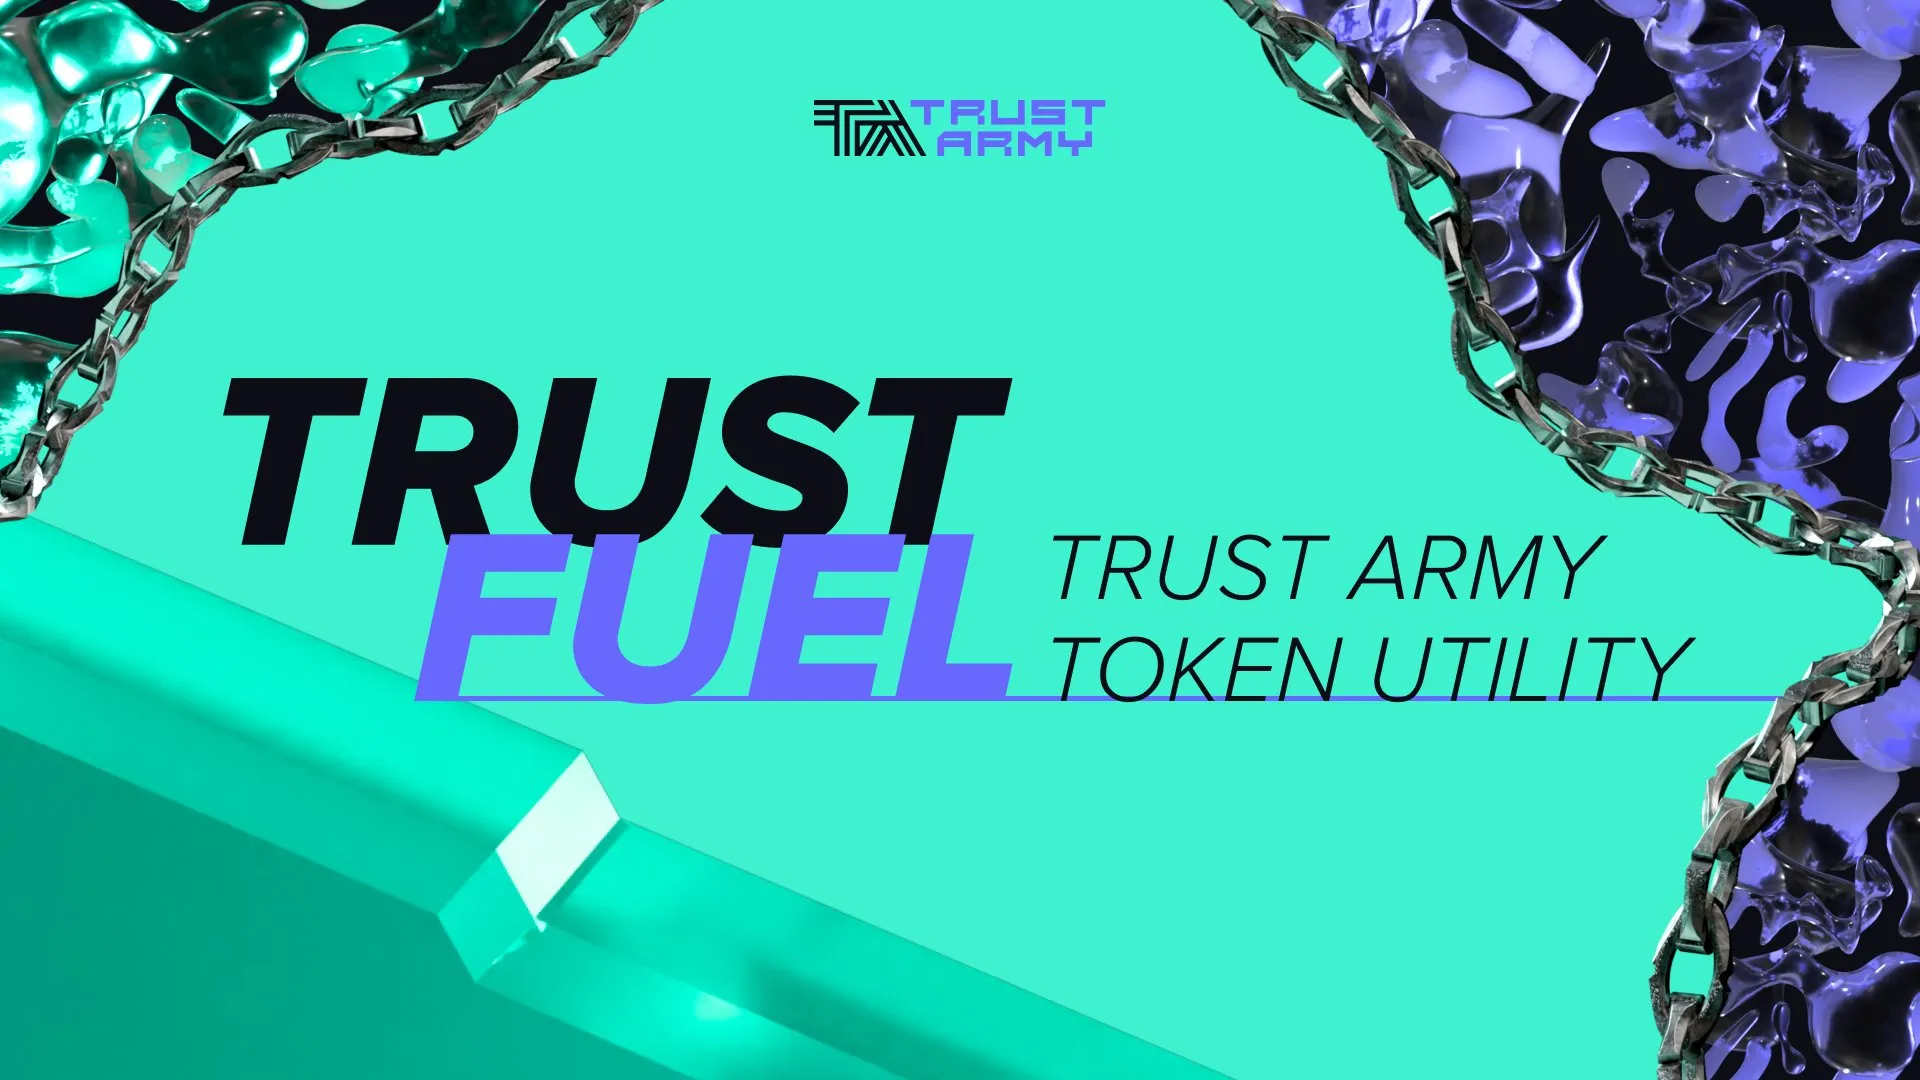 Trust Fuel — HAI Utility in Trust Army